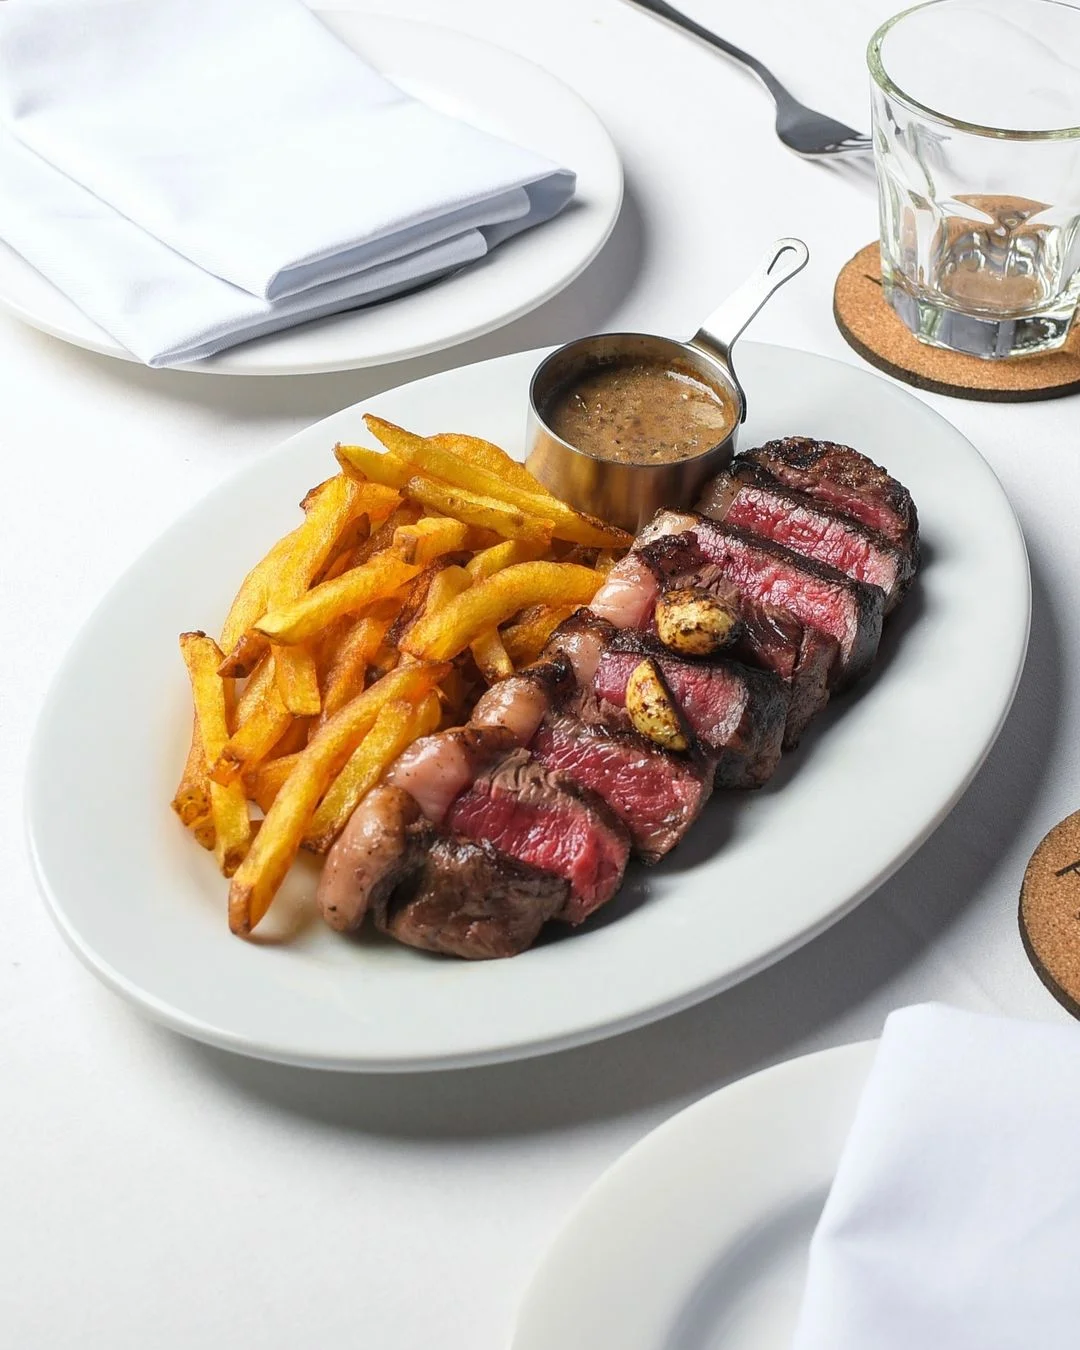 Picca Steak Room via Instagram.com @Picca.SteakRoom